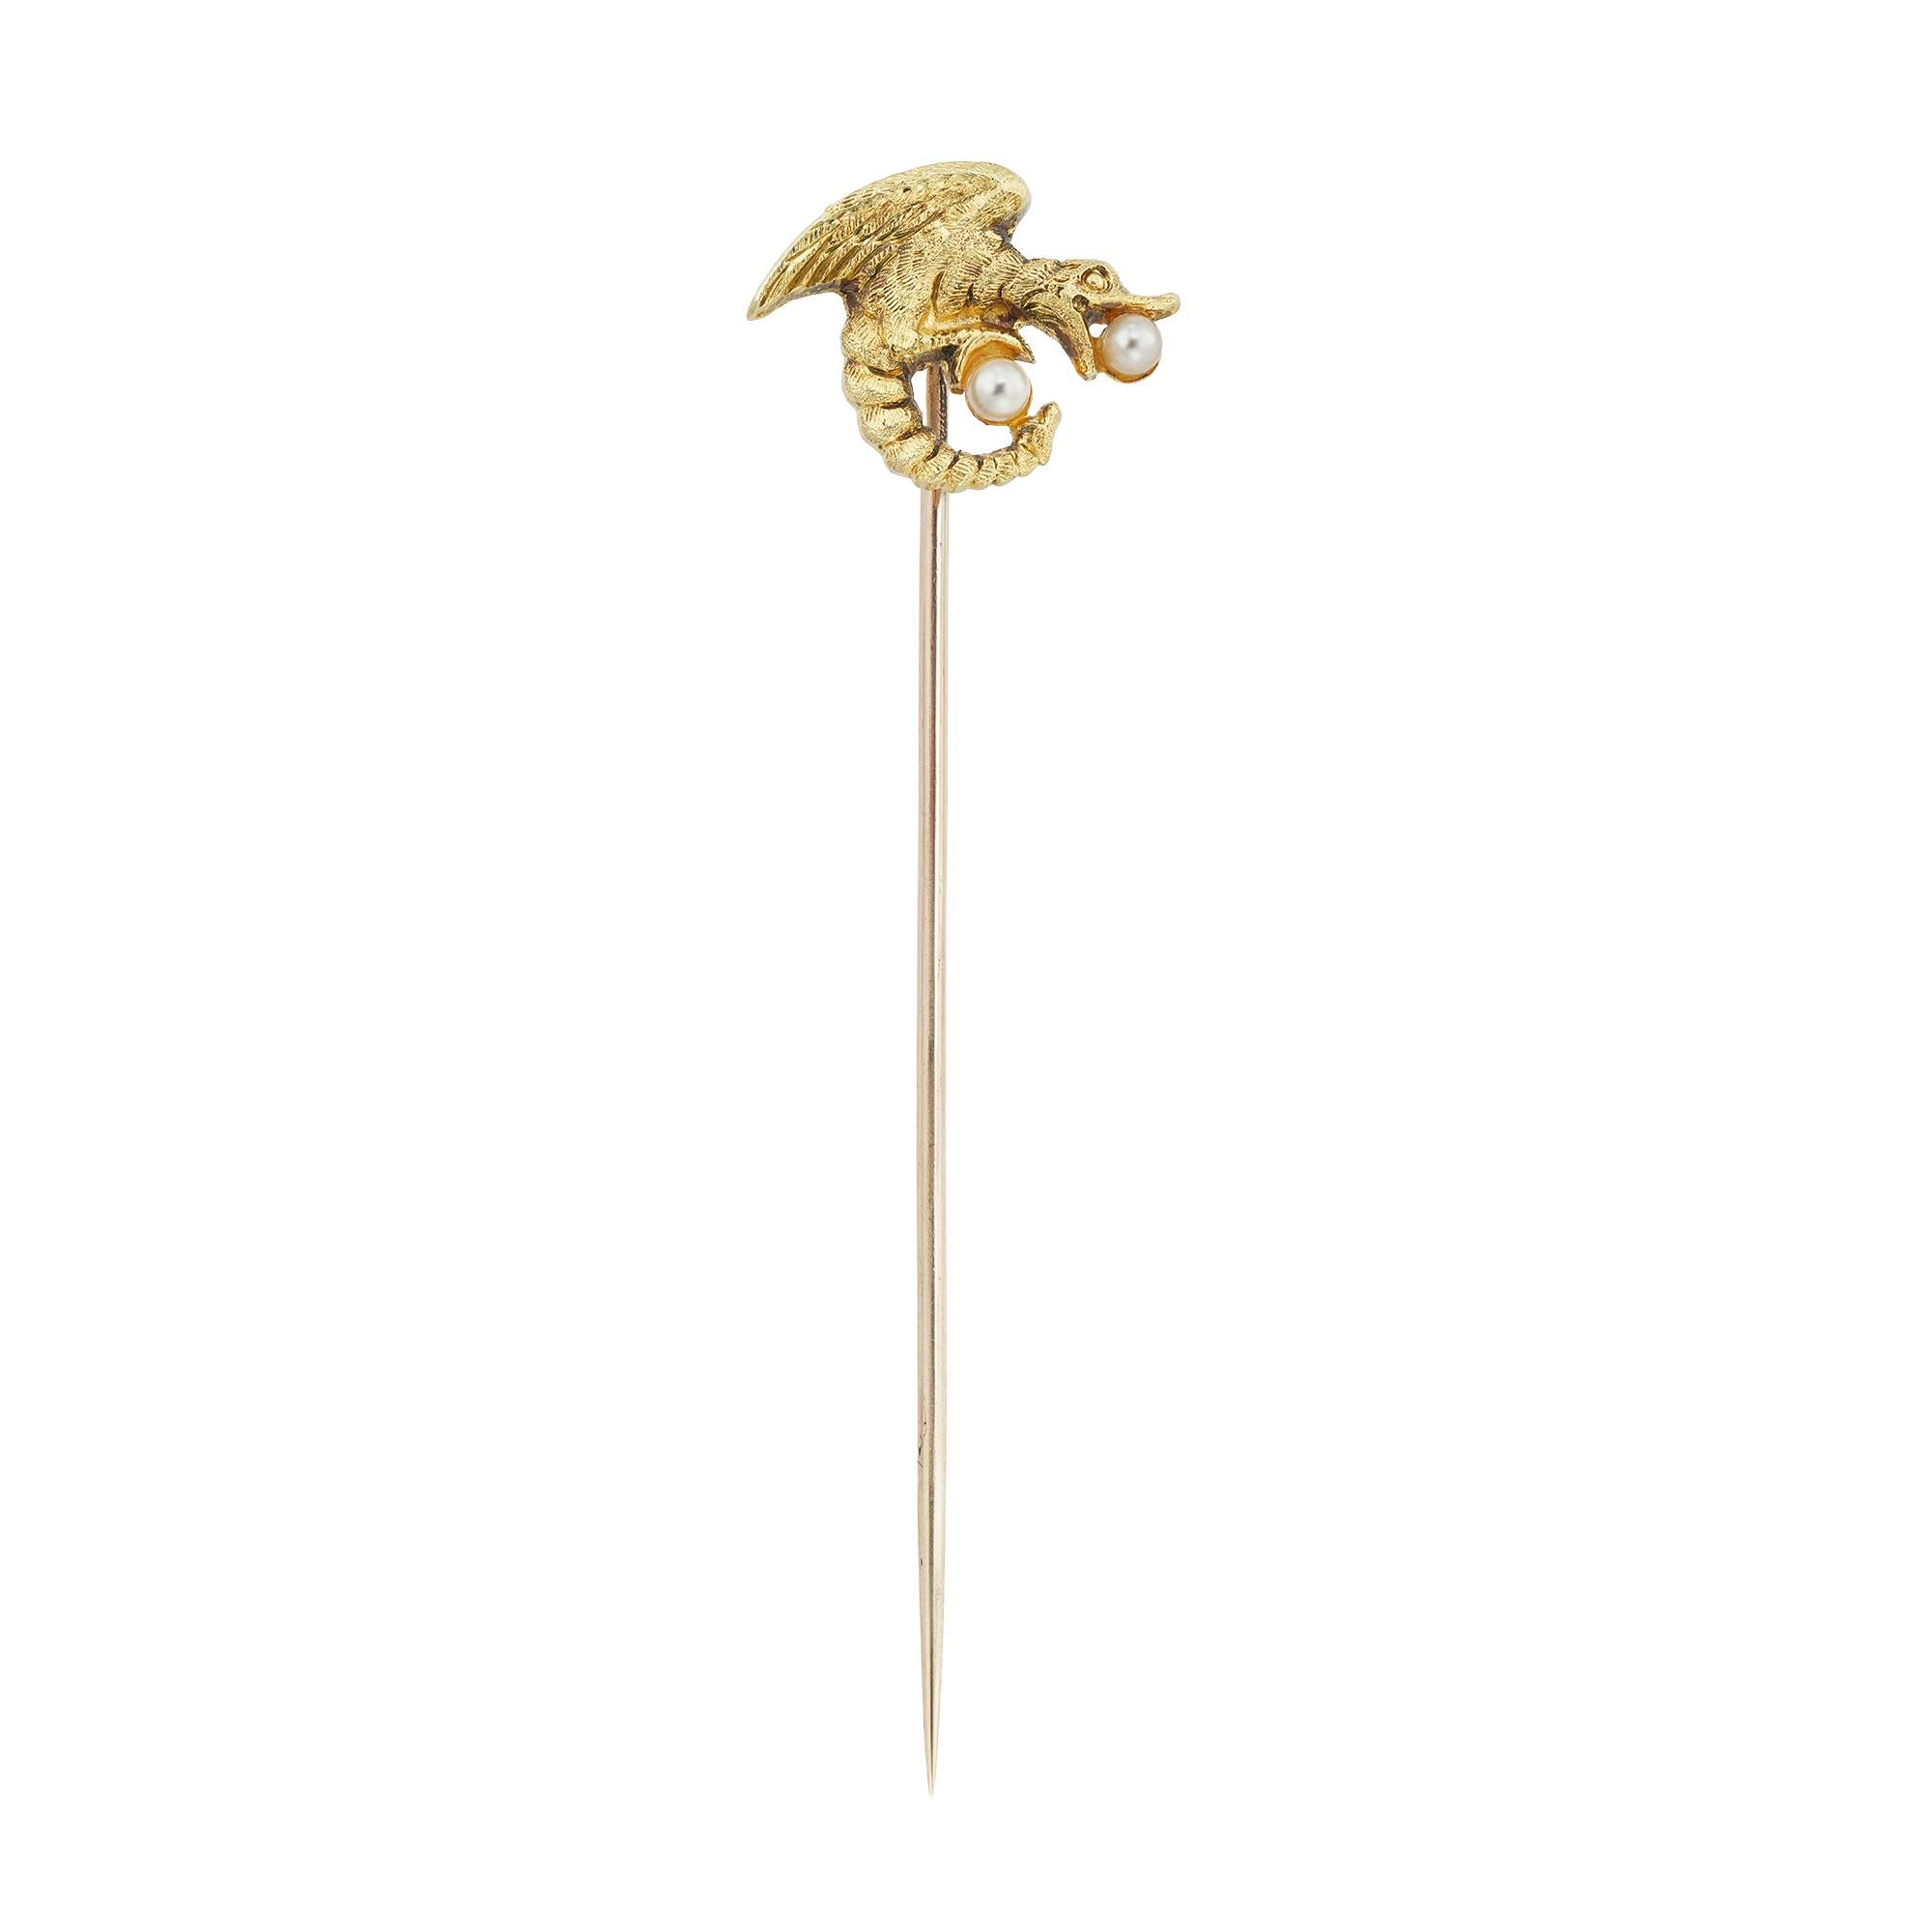 Jugendstil-Goldnadel mit der Darstellung eines Drachen, der eine runde Perle im Maul und eine weitere Perle in den Klauen hält, um 1890, Schmuckteil ca. 1,1 x 1,45 cm, Länge der Nadel 5,5 cm, Bruttogewicht 1,2 g.

Diese antike Brosche ist in einem